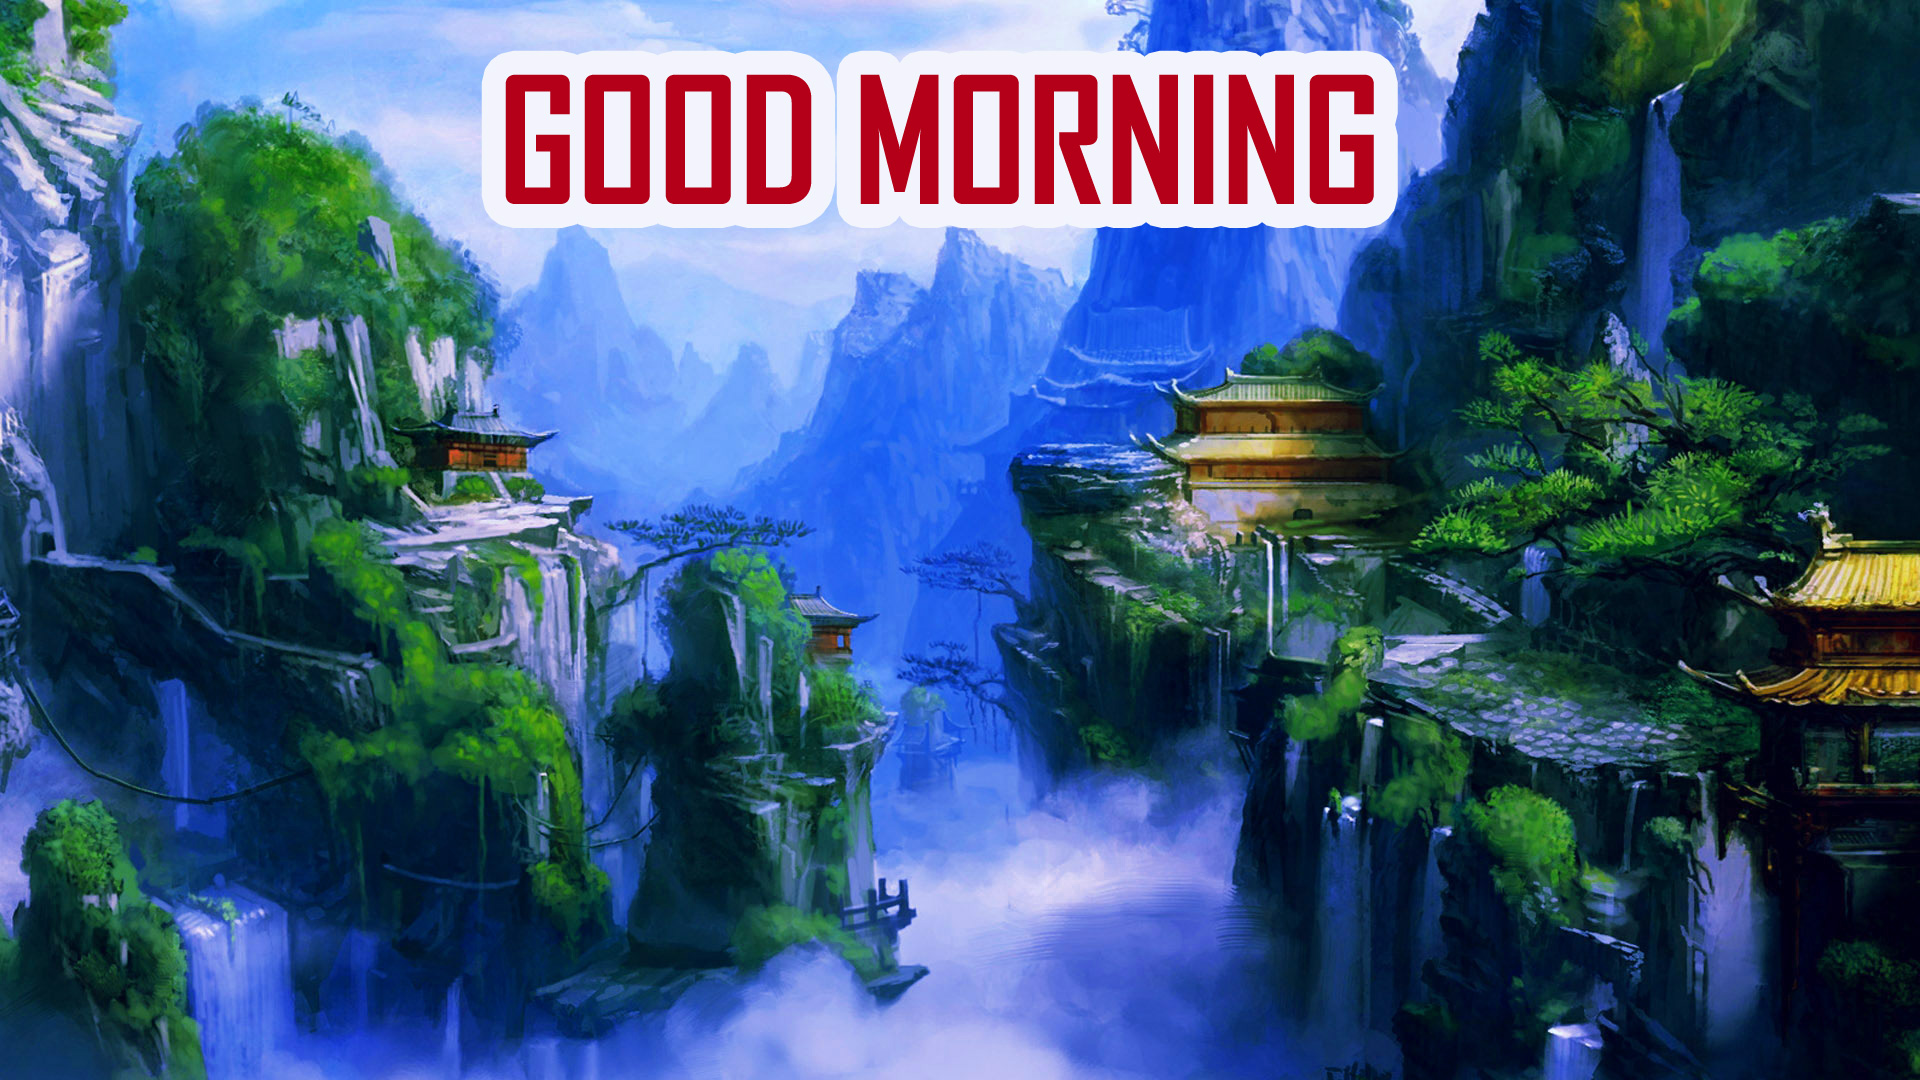 Beautiful China , HD Wallpaper & Backgrounds